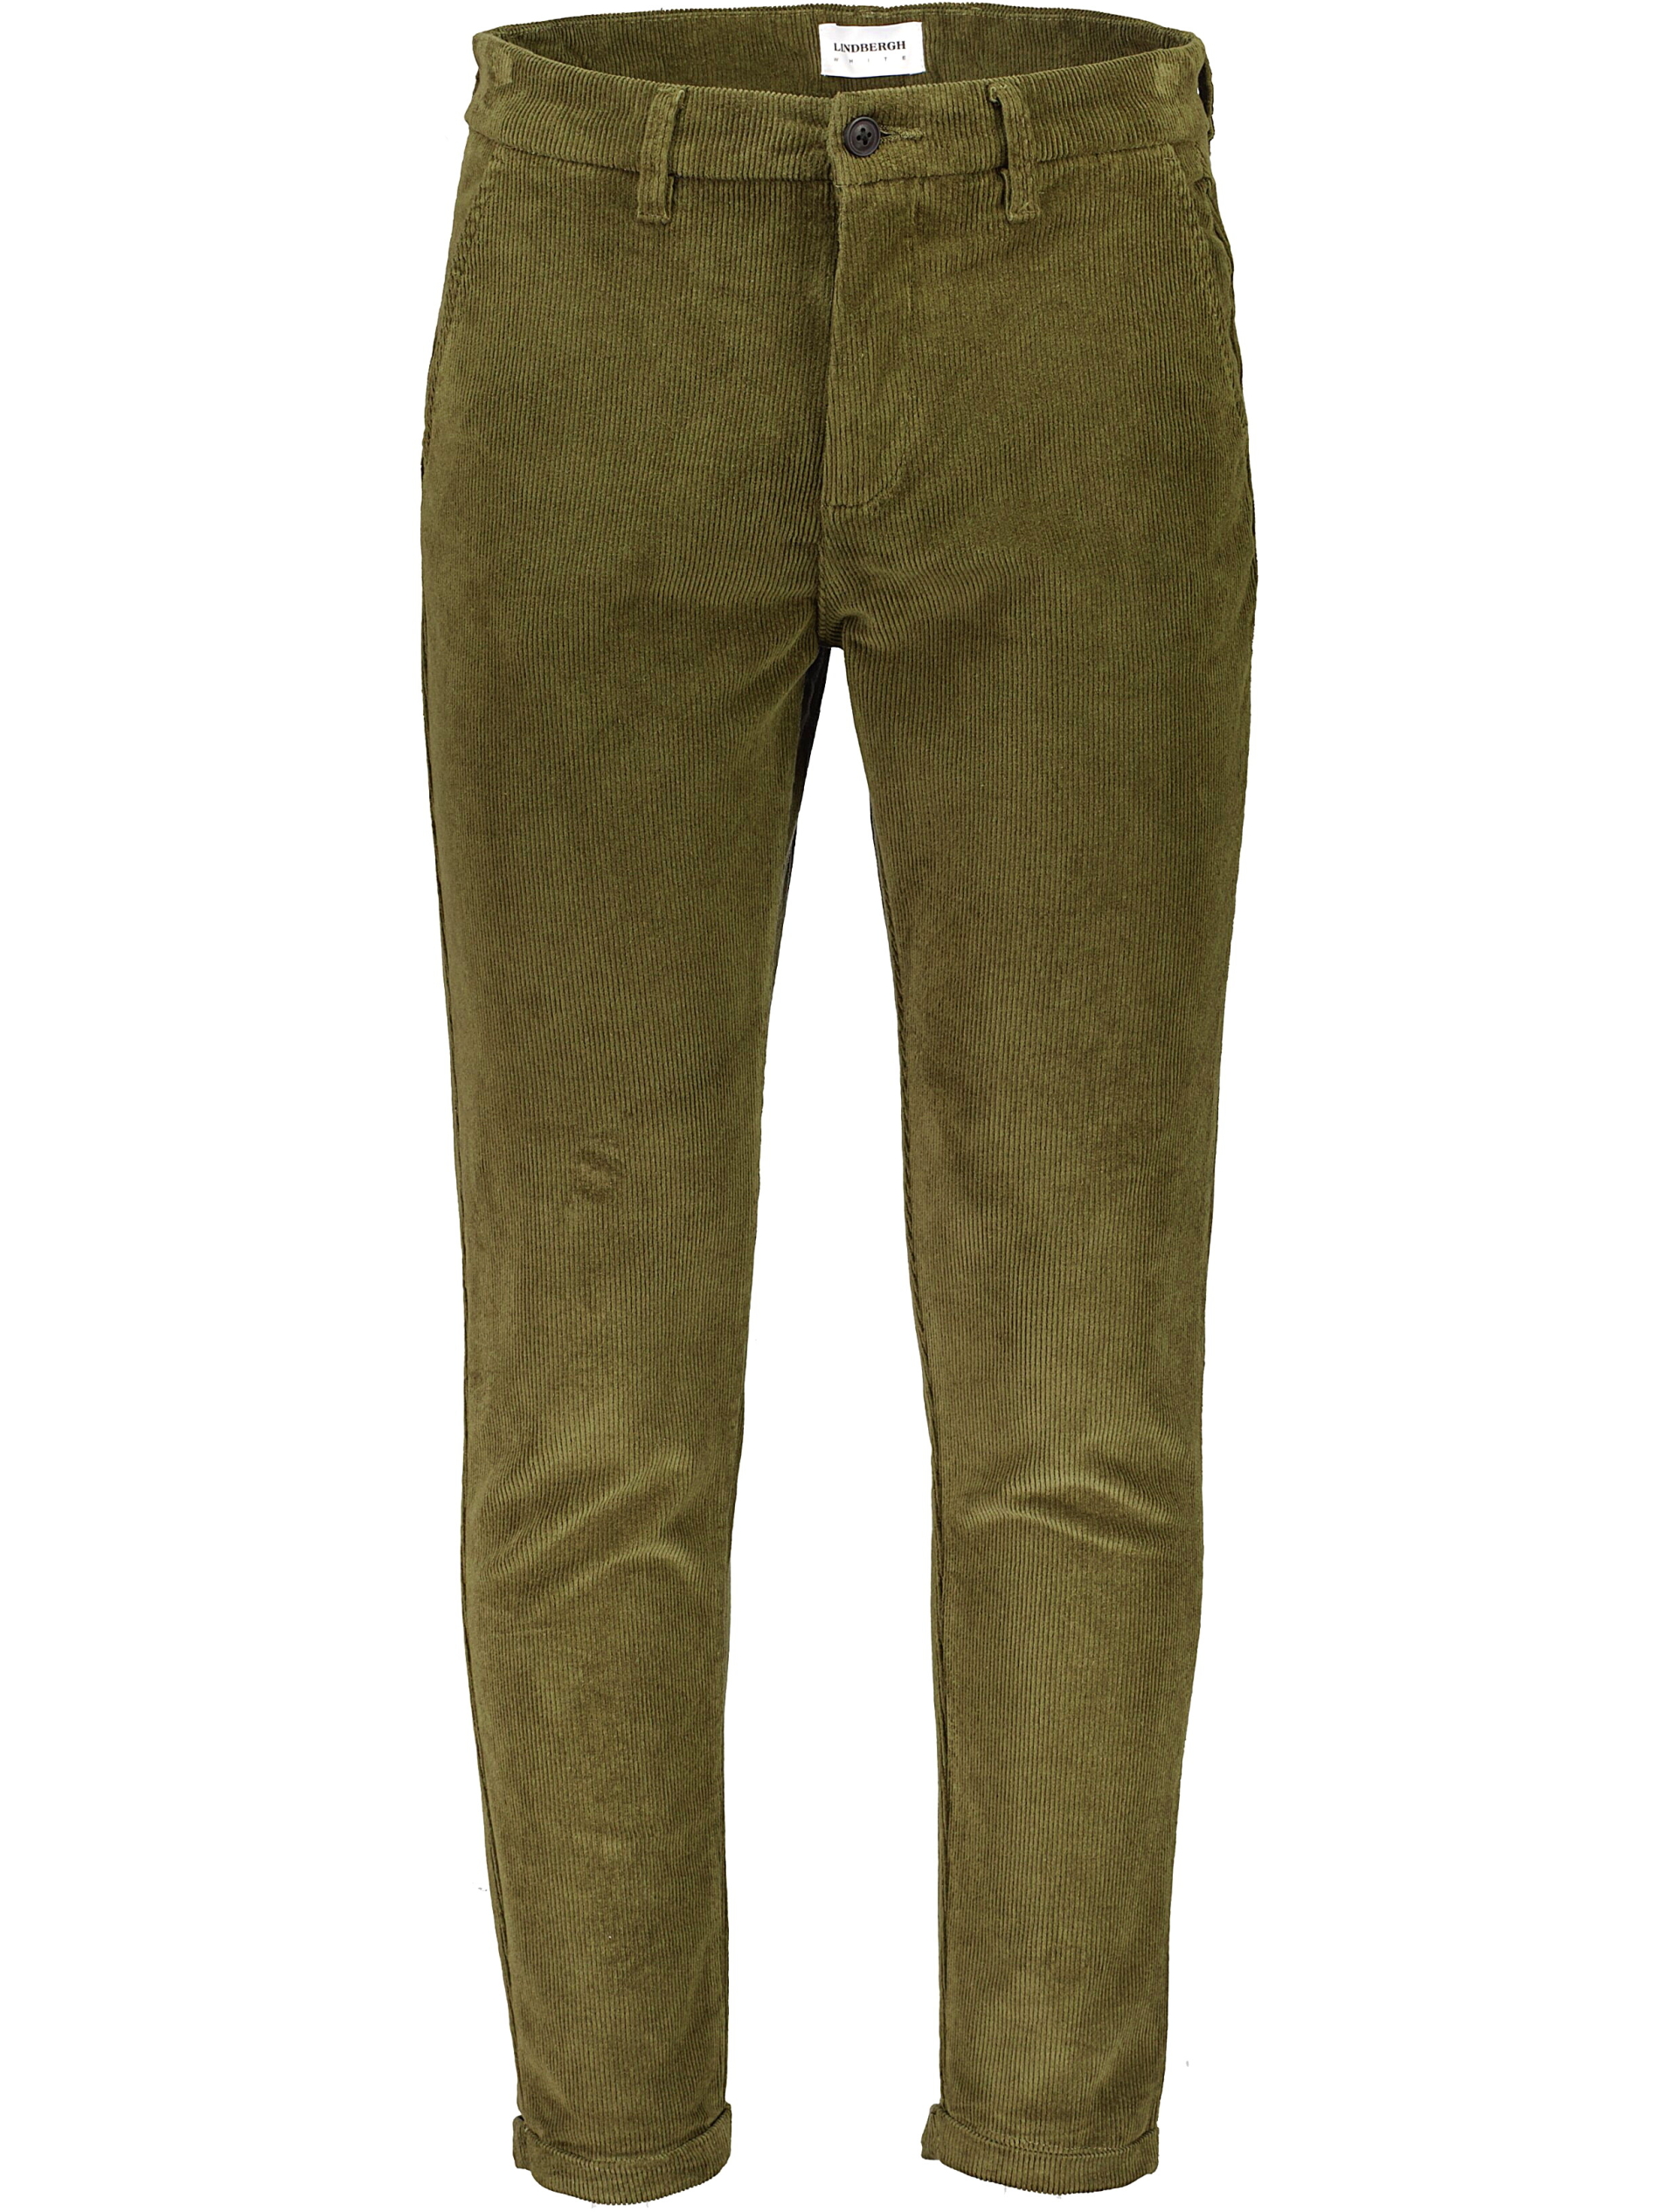 Lindbergh Fløjlsbukser grøn / army